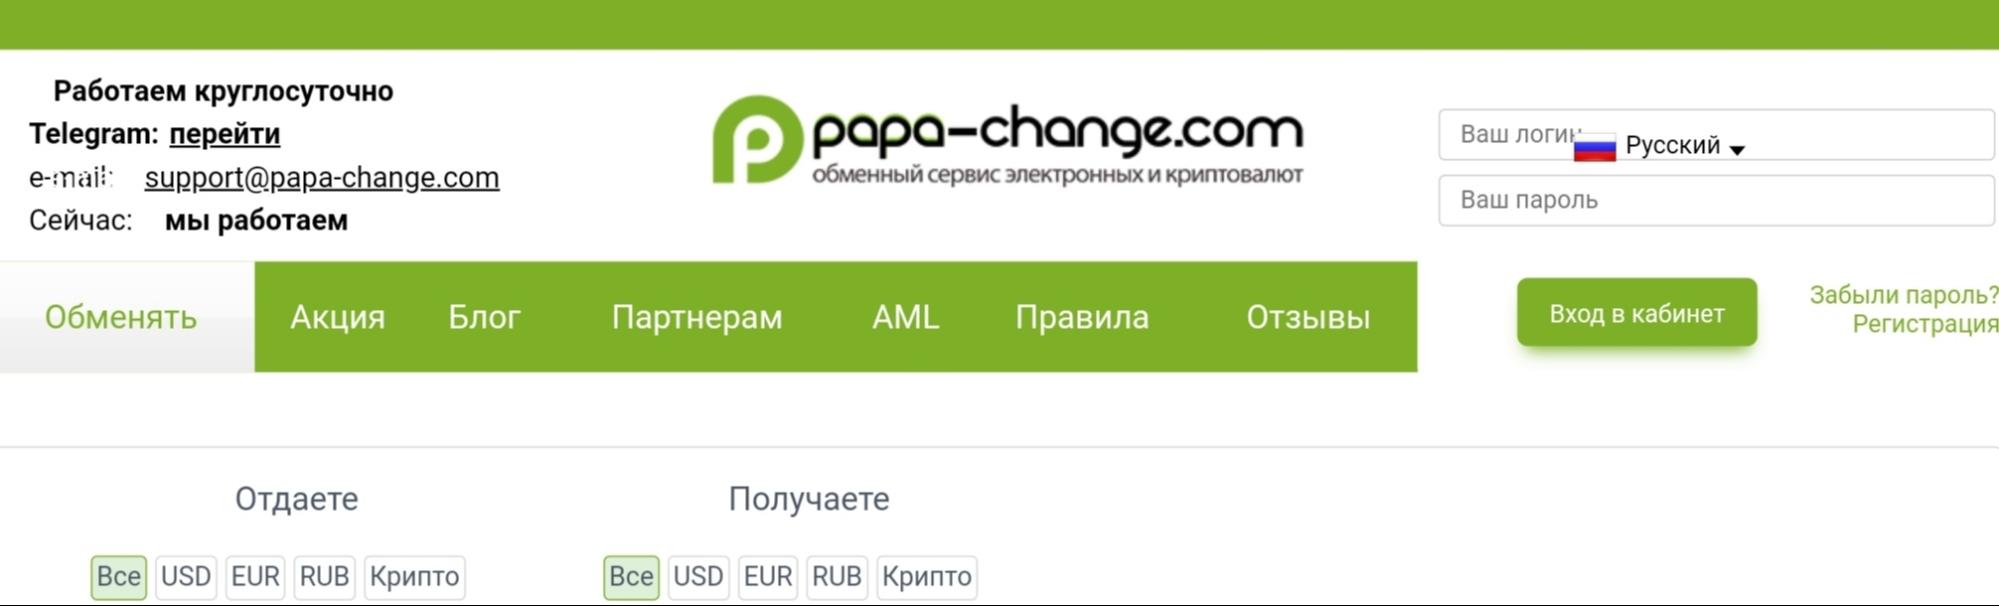 Papa Change сайт